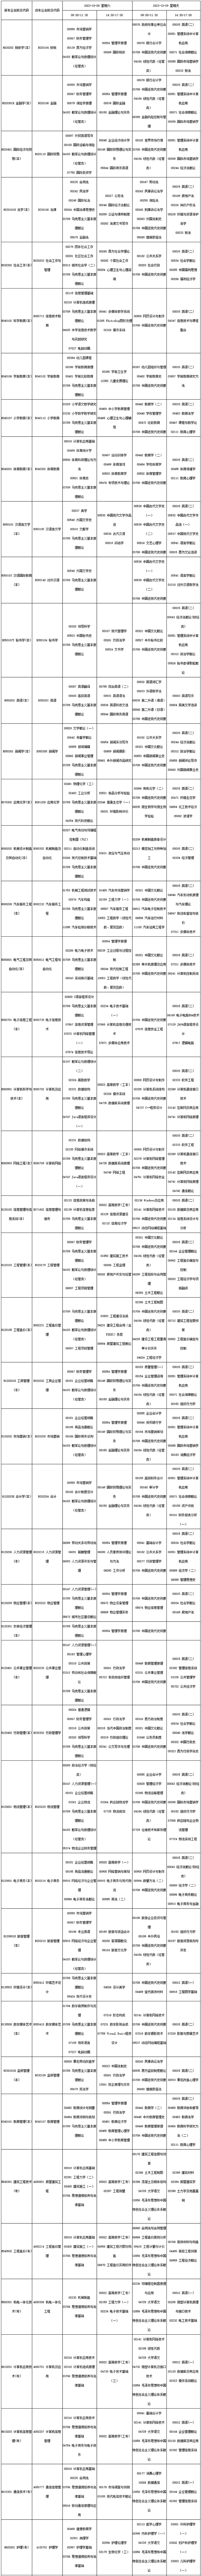 2023年10月四川自考考试课表